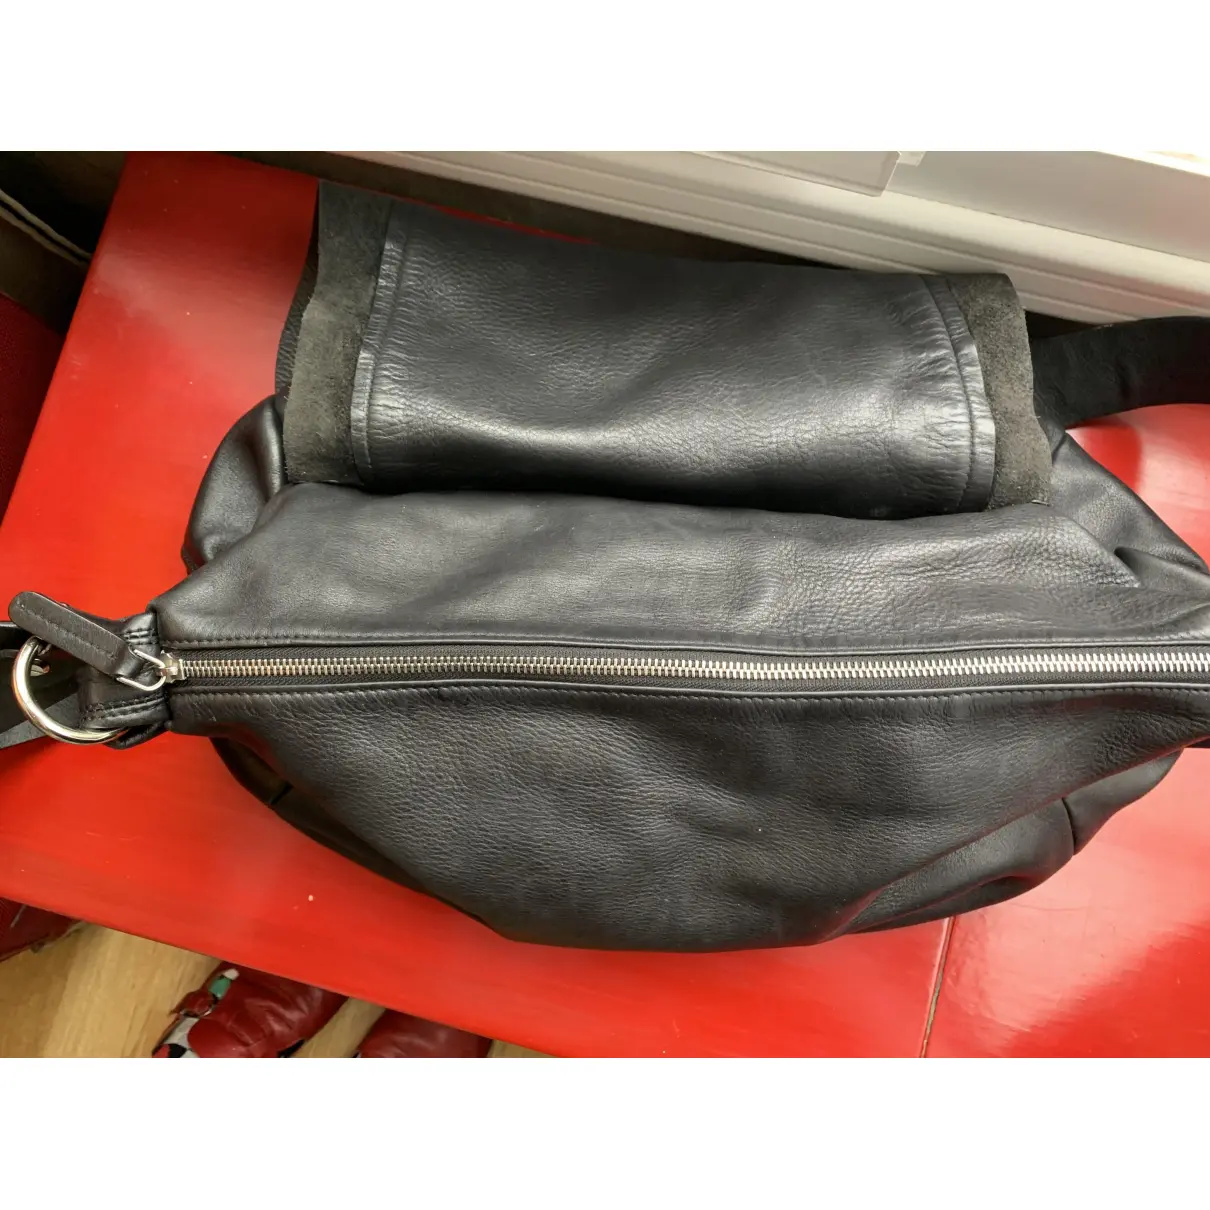 Leather bag Marni